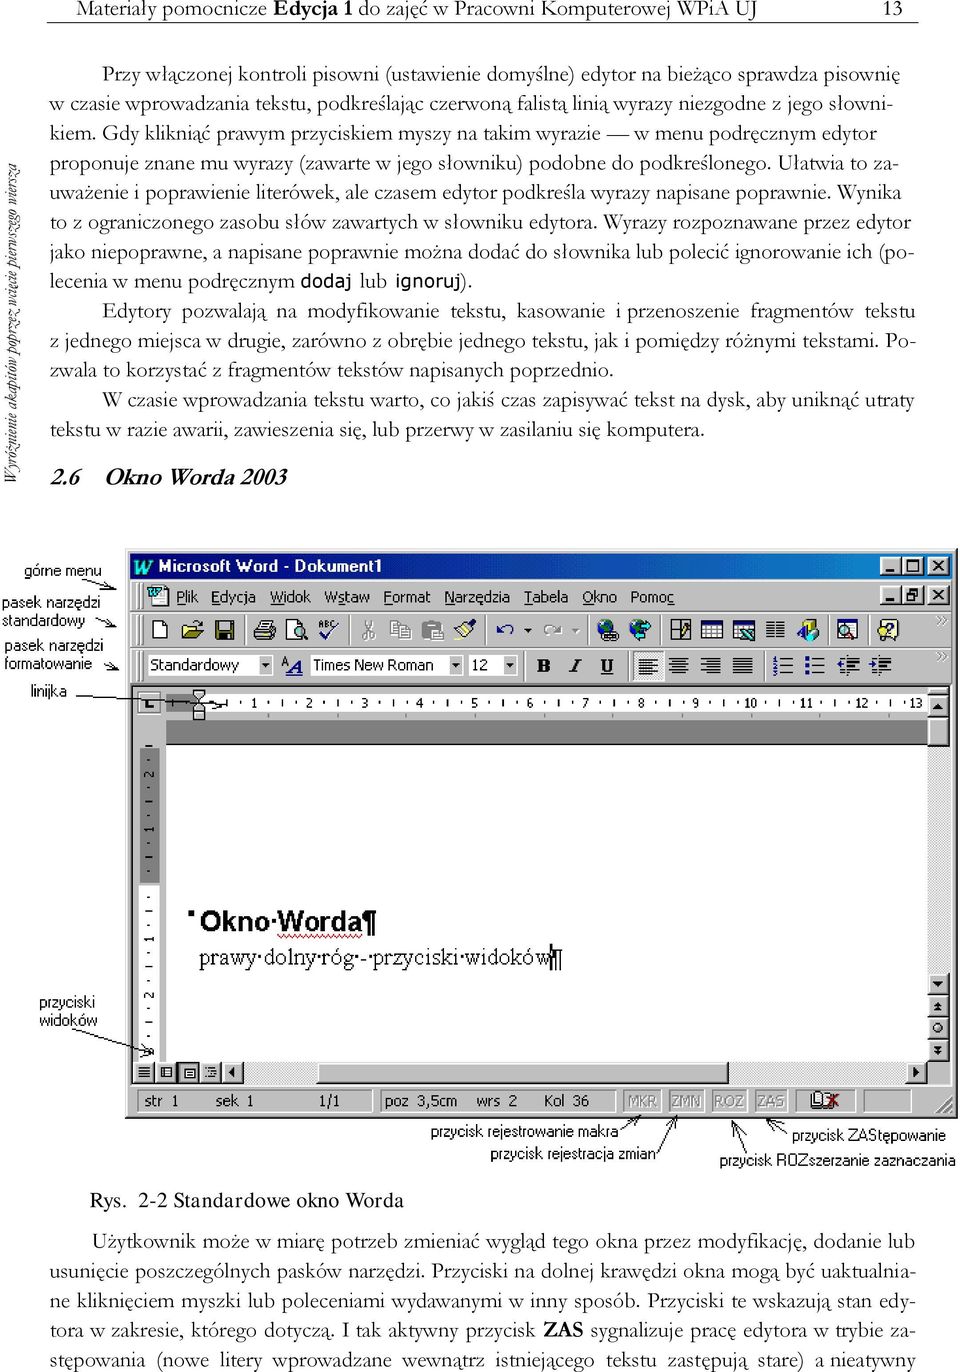 Gdy klikniąć prawym przyciskiem myszy na takim wyrazie w menu podręcznym edytor proponuje znane mu wyrazy (zawarte w jego słowniku) podobne do podkreślonego.